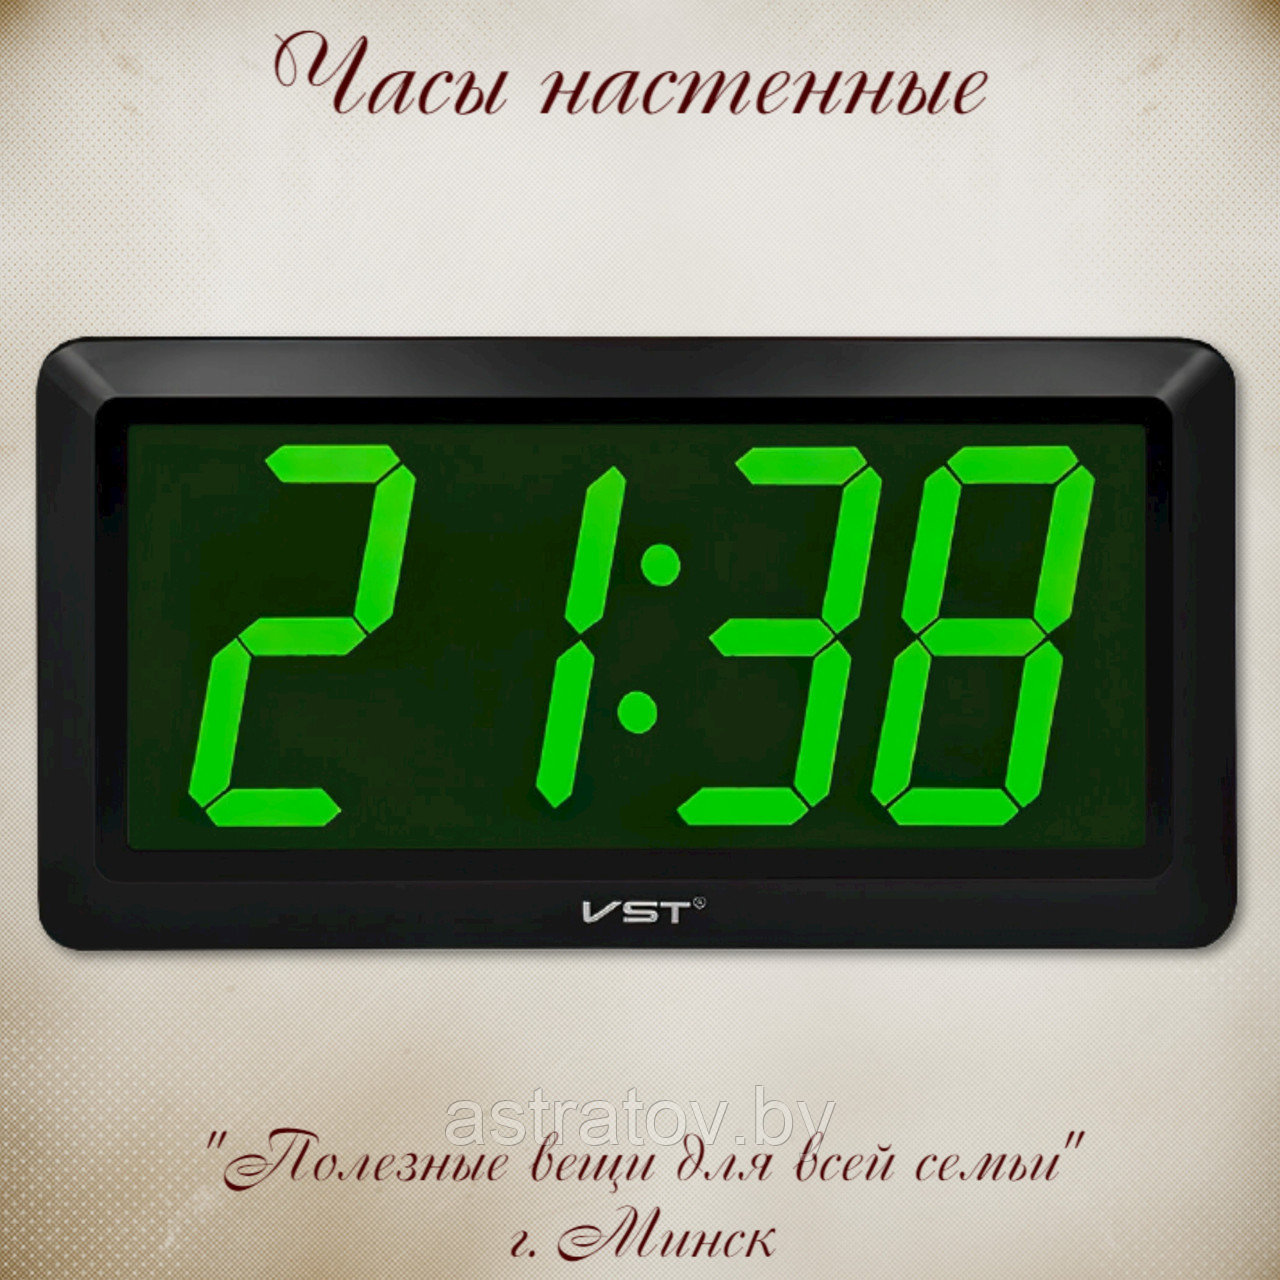 Часы электронные 33*3.5*17 см   VST780-4